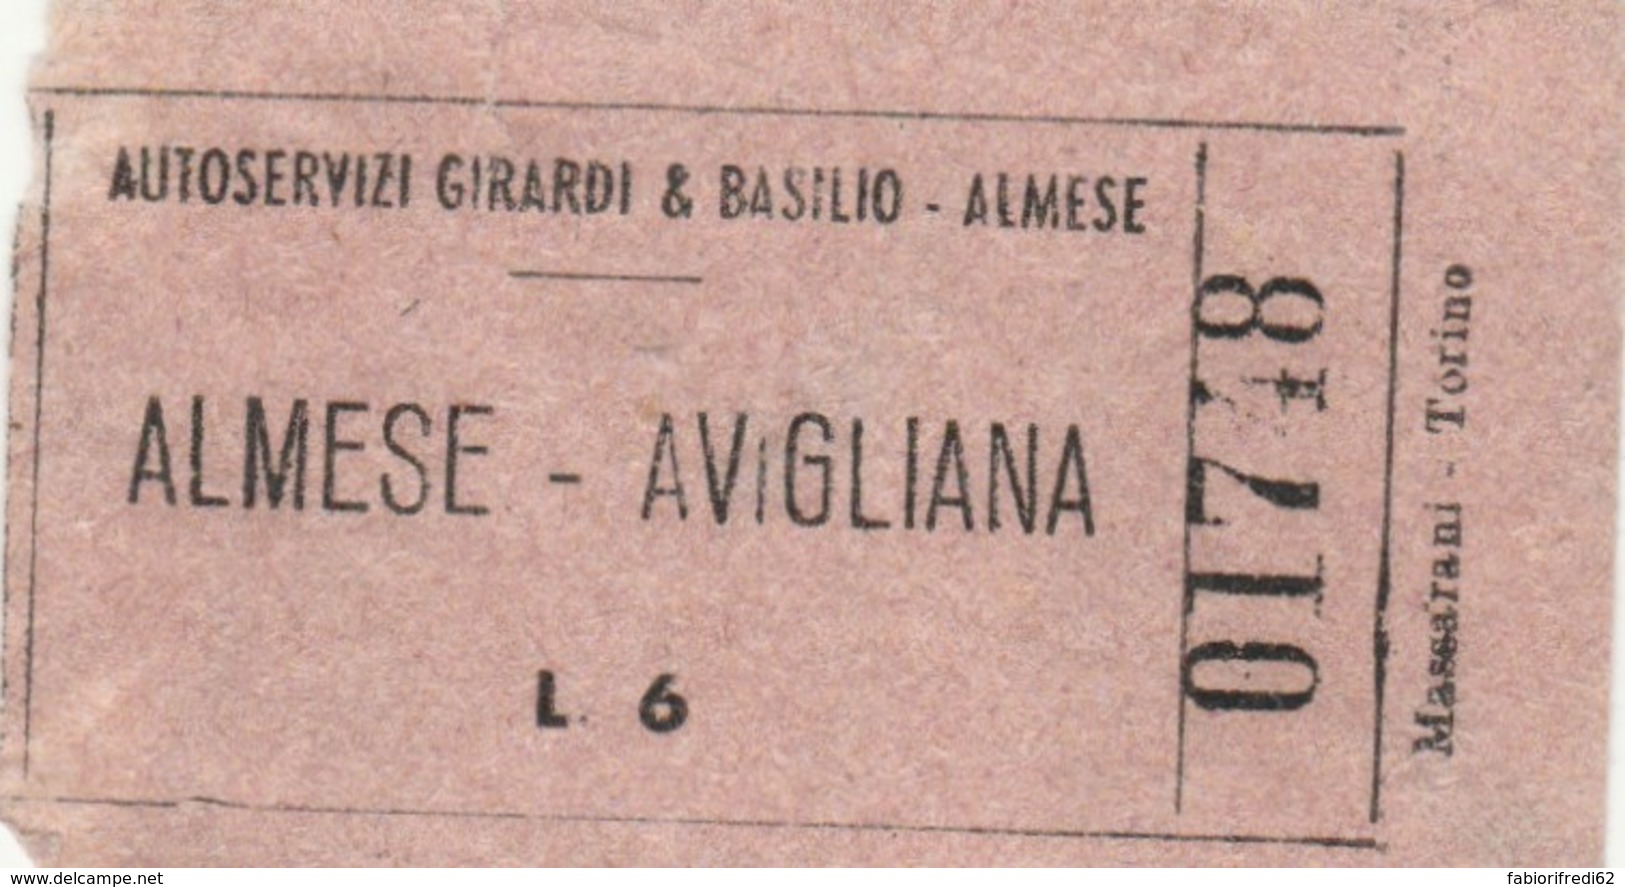 BIGLIETTO BUS ALMESE AVIGILIANA LIRE 6 (BY492 - Europa